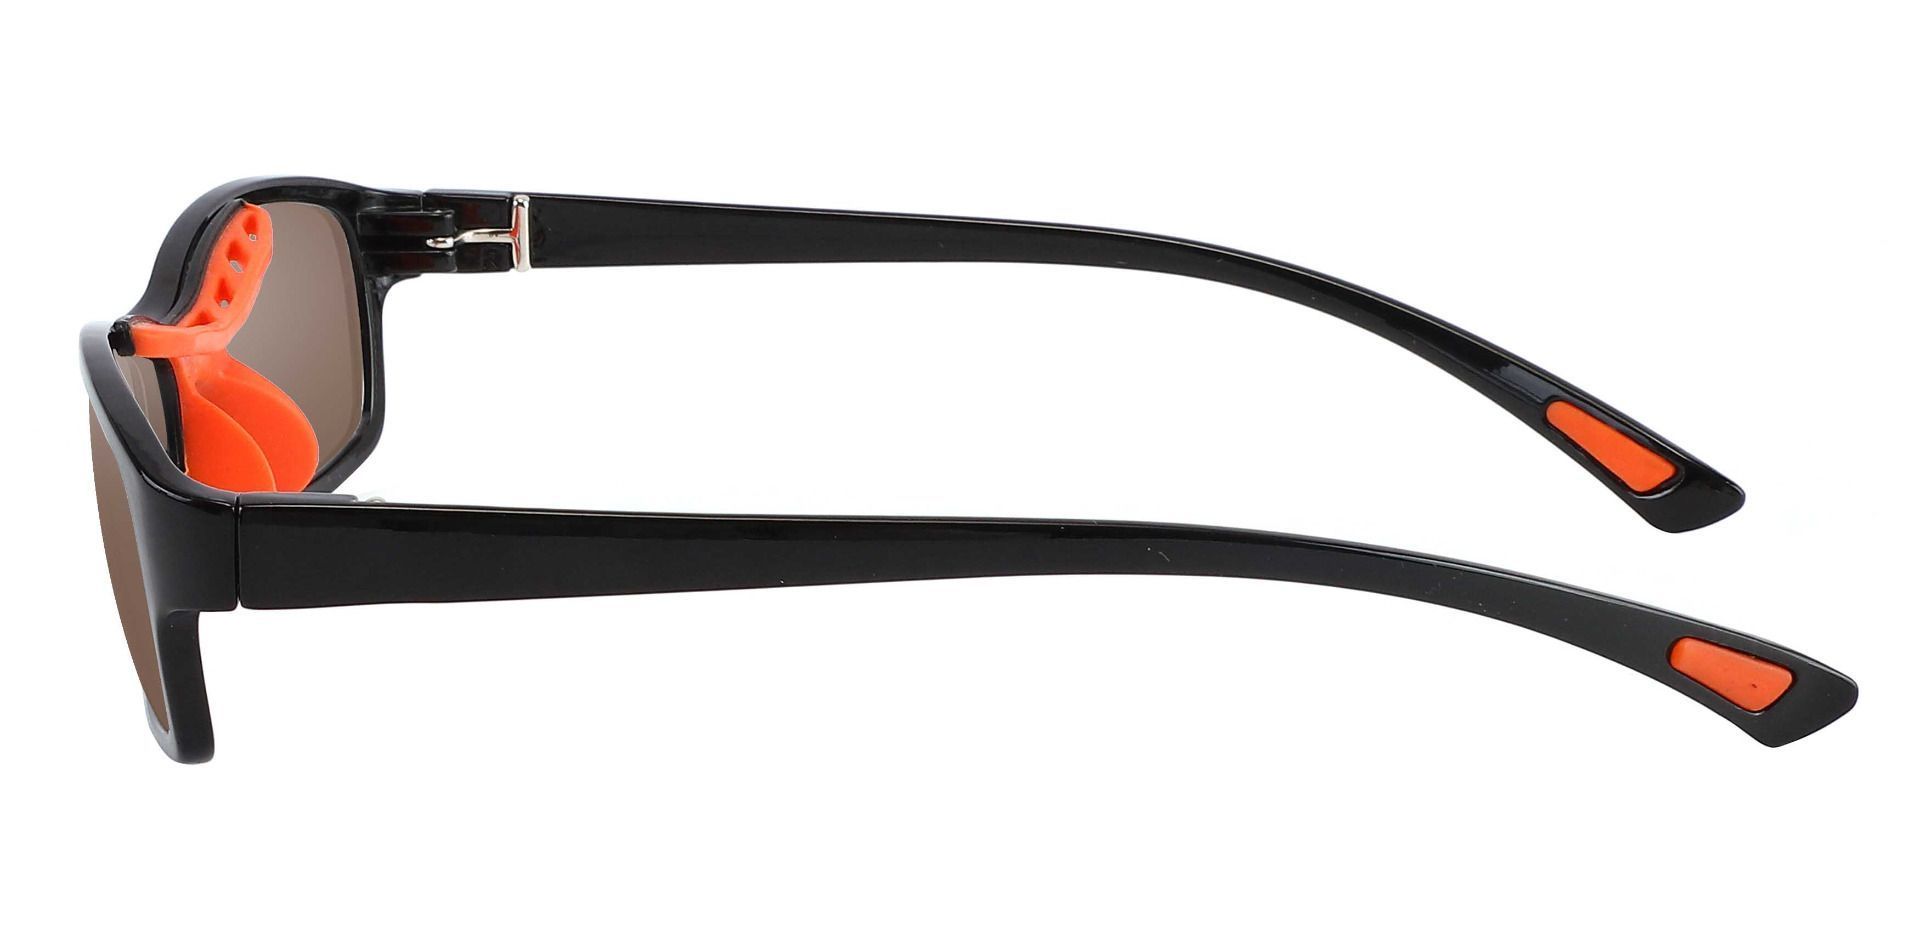 Glynn Rectangle Progressive Sunglasses - Black Frame With Brown Lenses